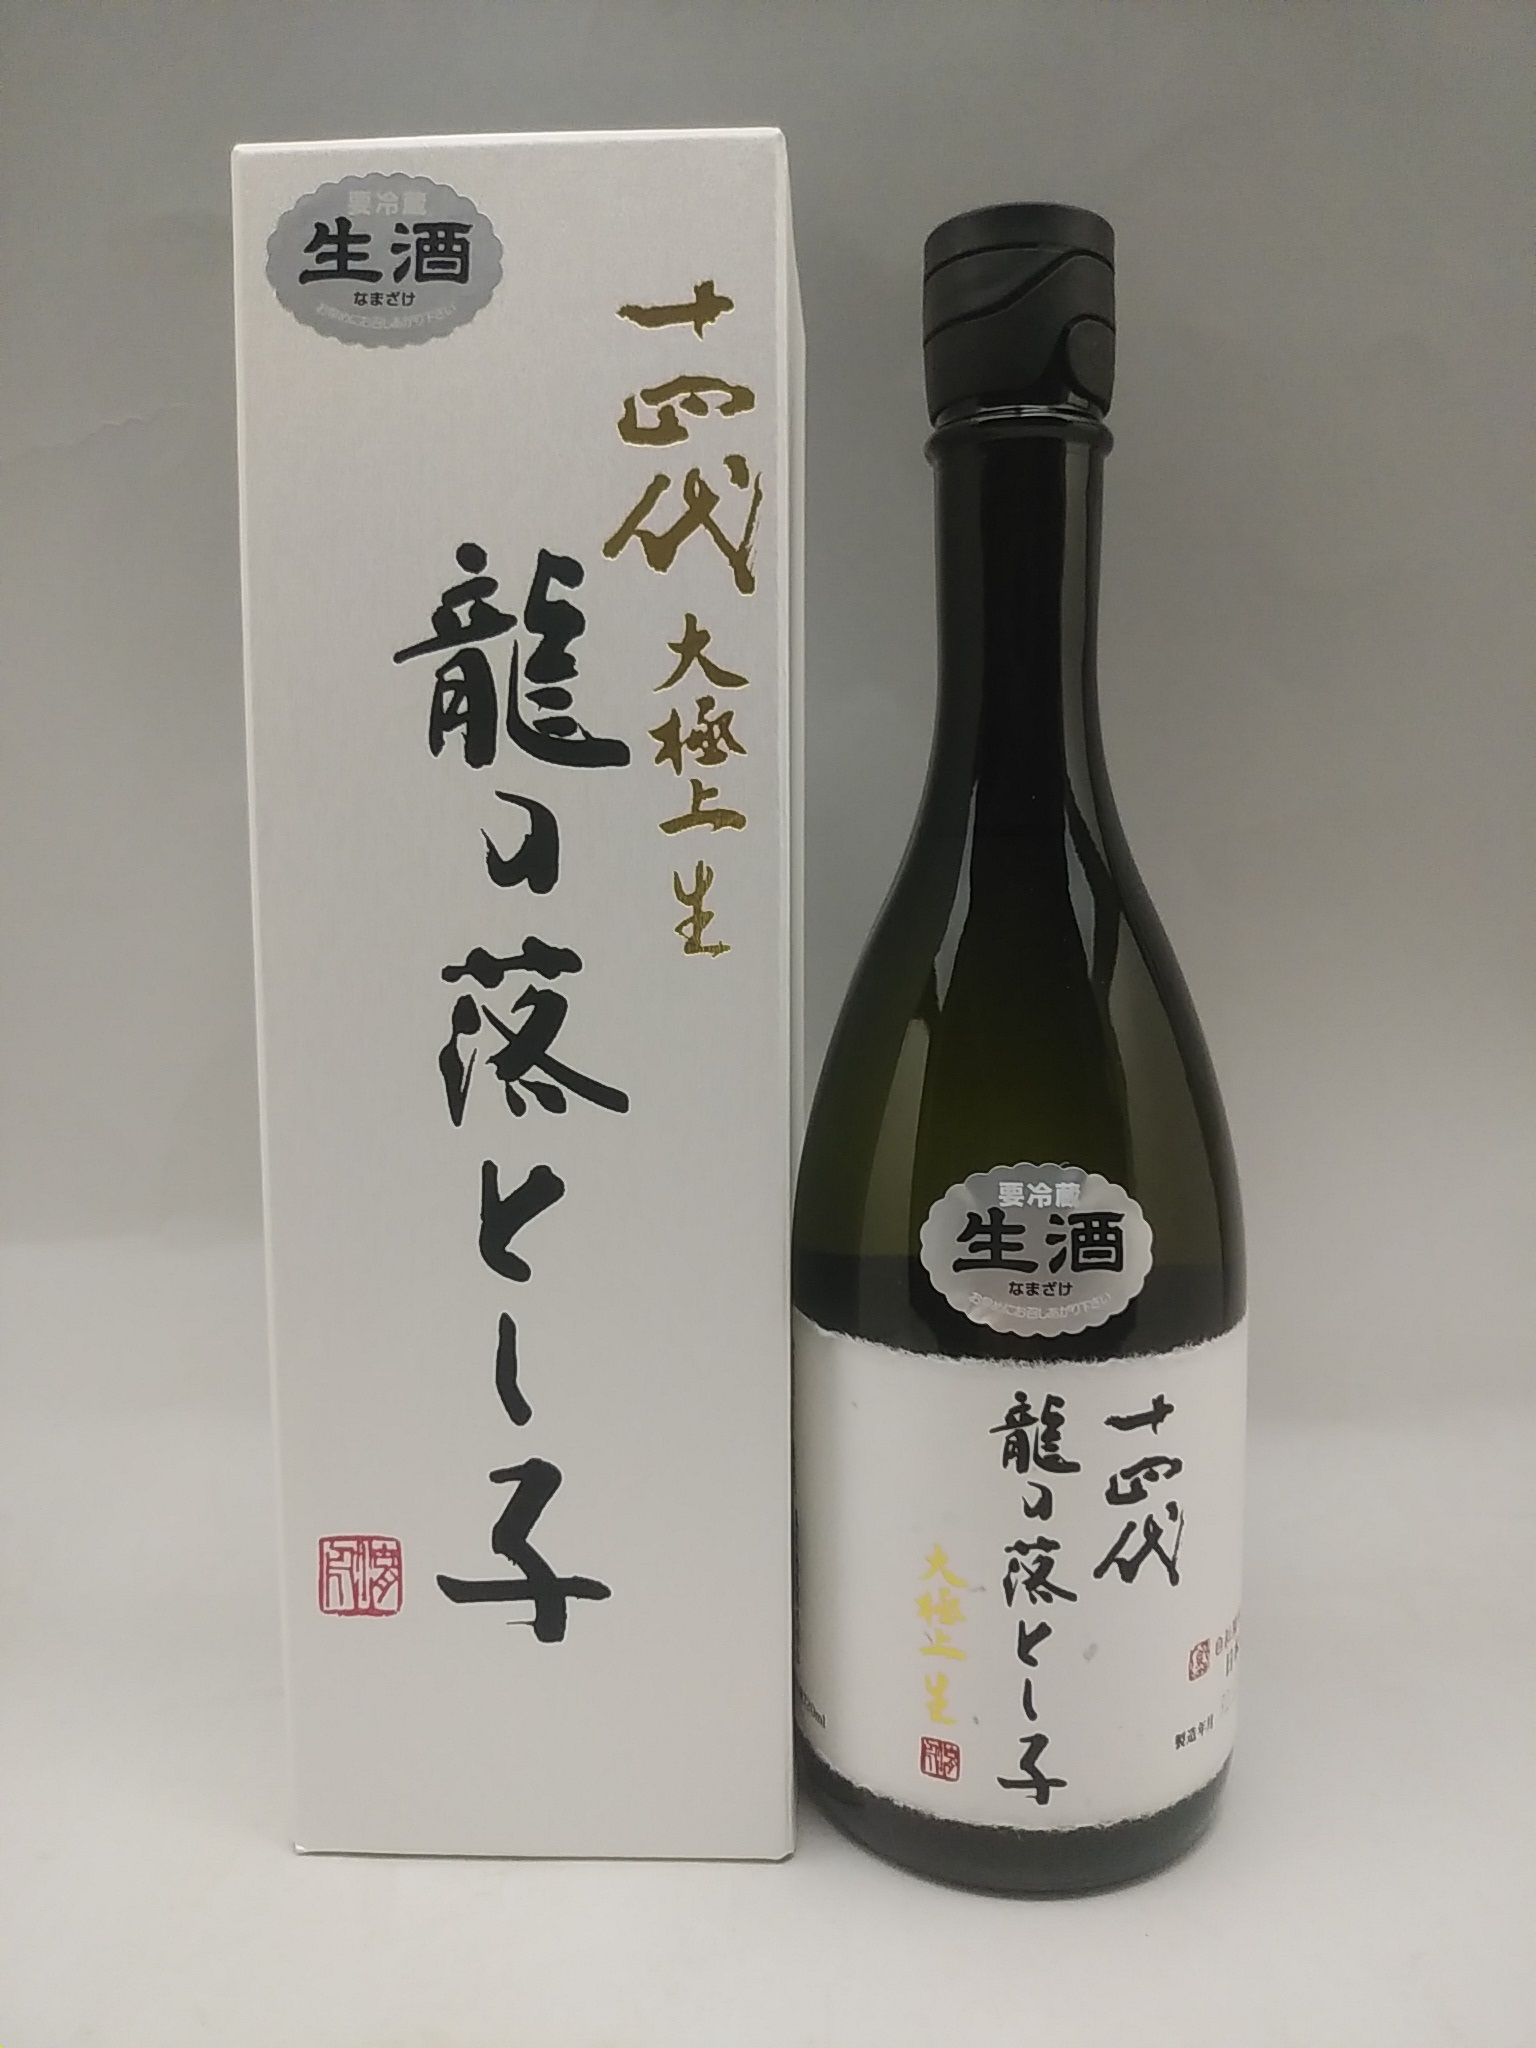 楽天市場十四代 大極上生 純米大吟醸 龍の落とし子  日本酒